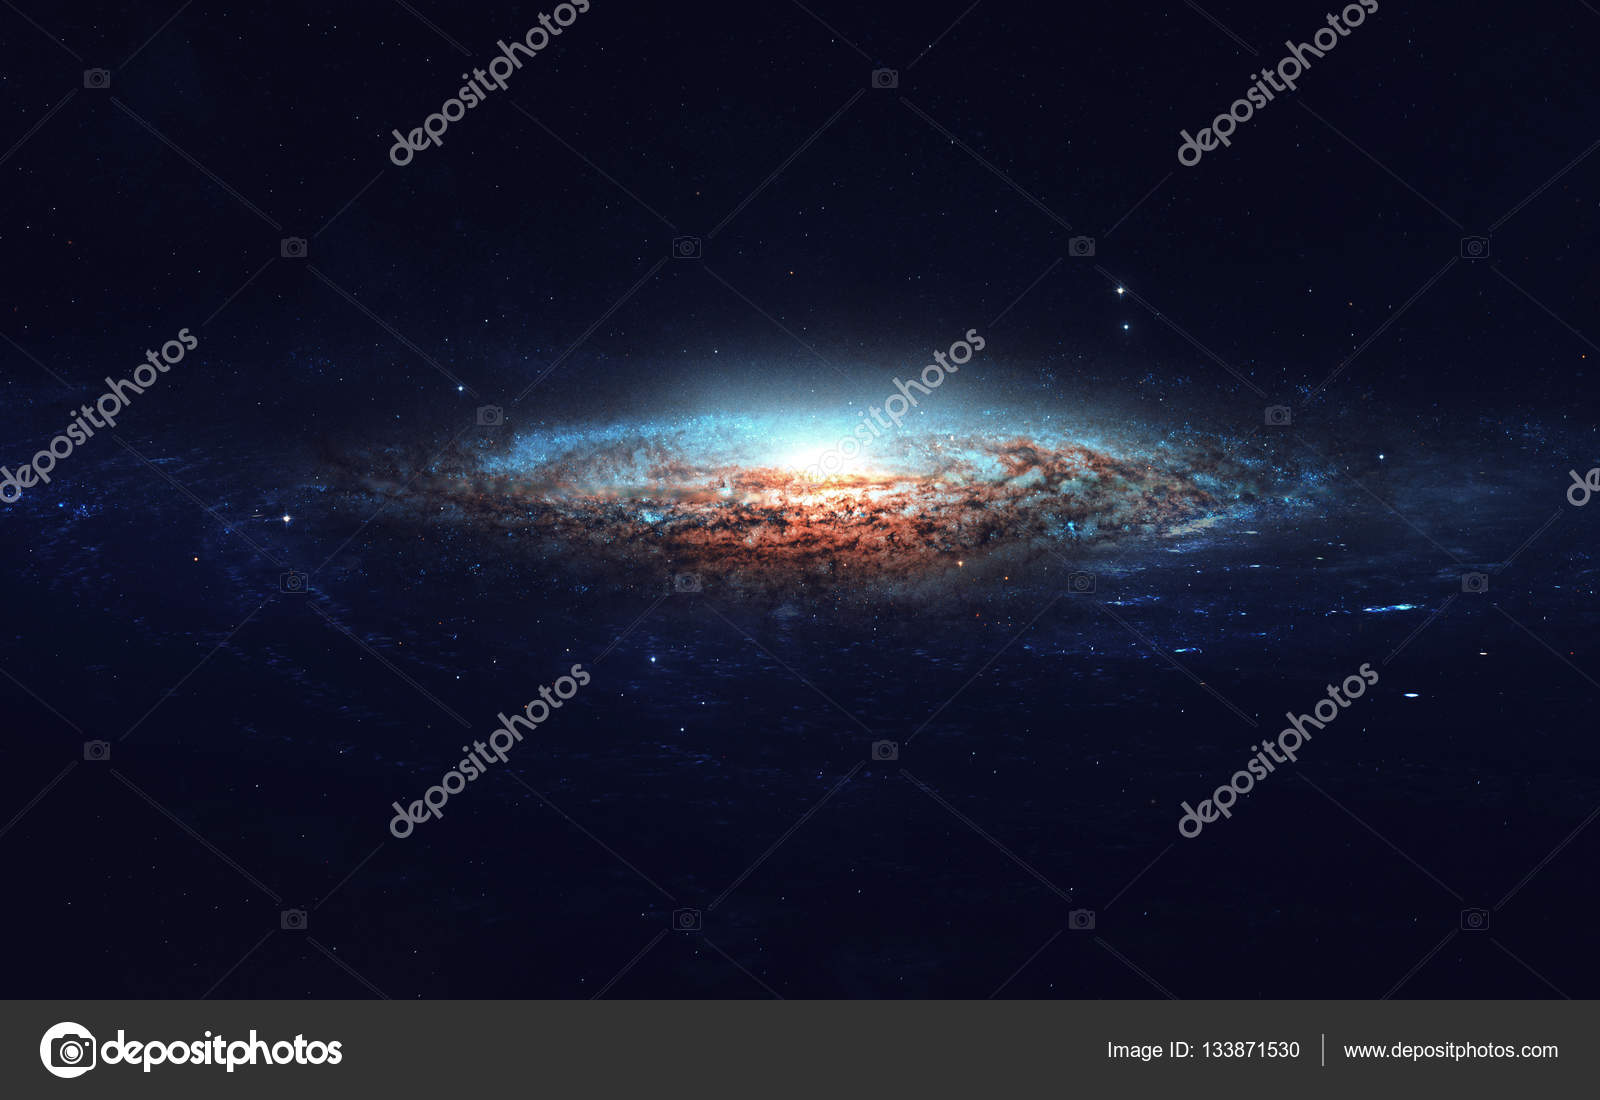 深宇宙アート 星雲 惑星 銀河 美しい構図の星 素晴らしい壁紙 印刷 Nasa から提供されたこのイメージの要素 ストック写真 C Shad Off